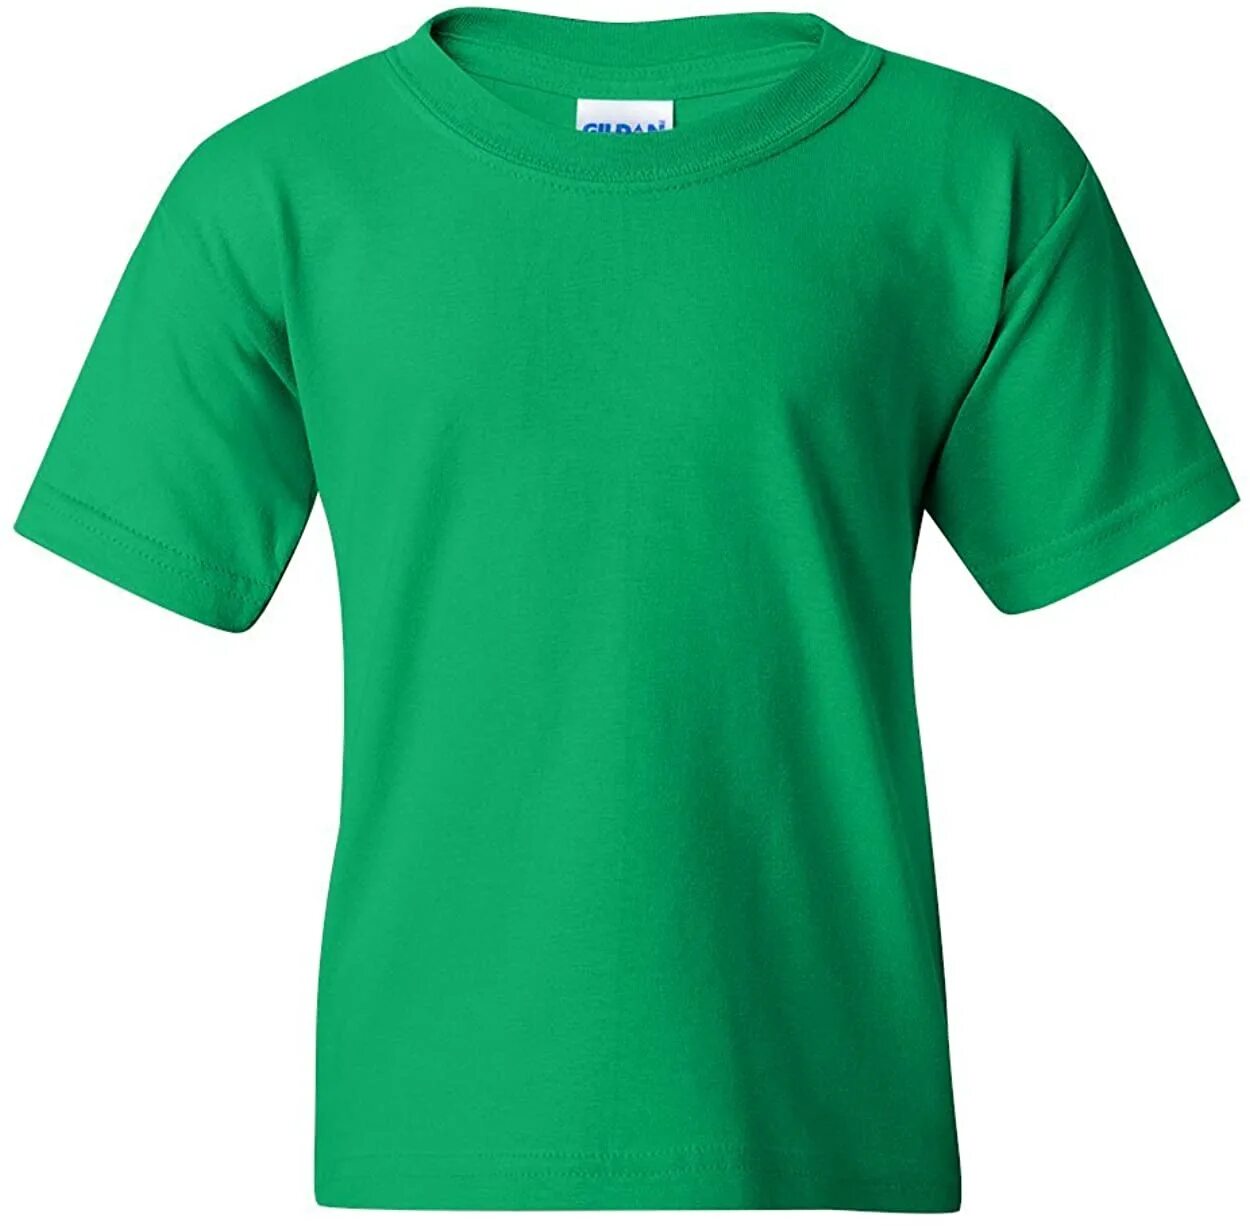 Твердый футболка. Футболка простая. Футболка gar. Юность футболка темно-зеленая. Irish b b